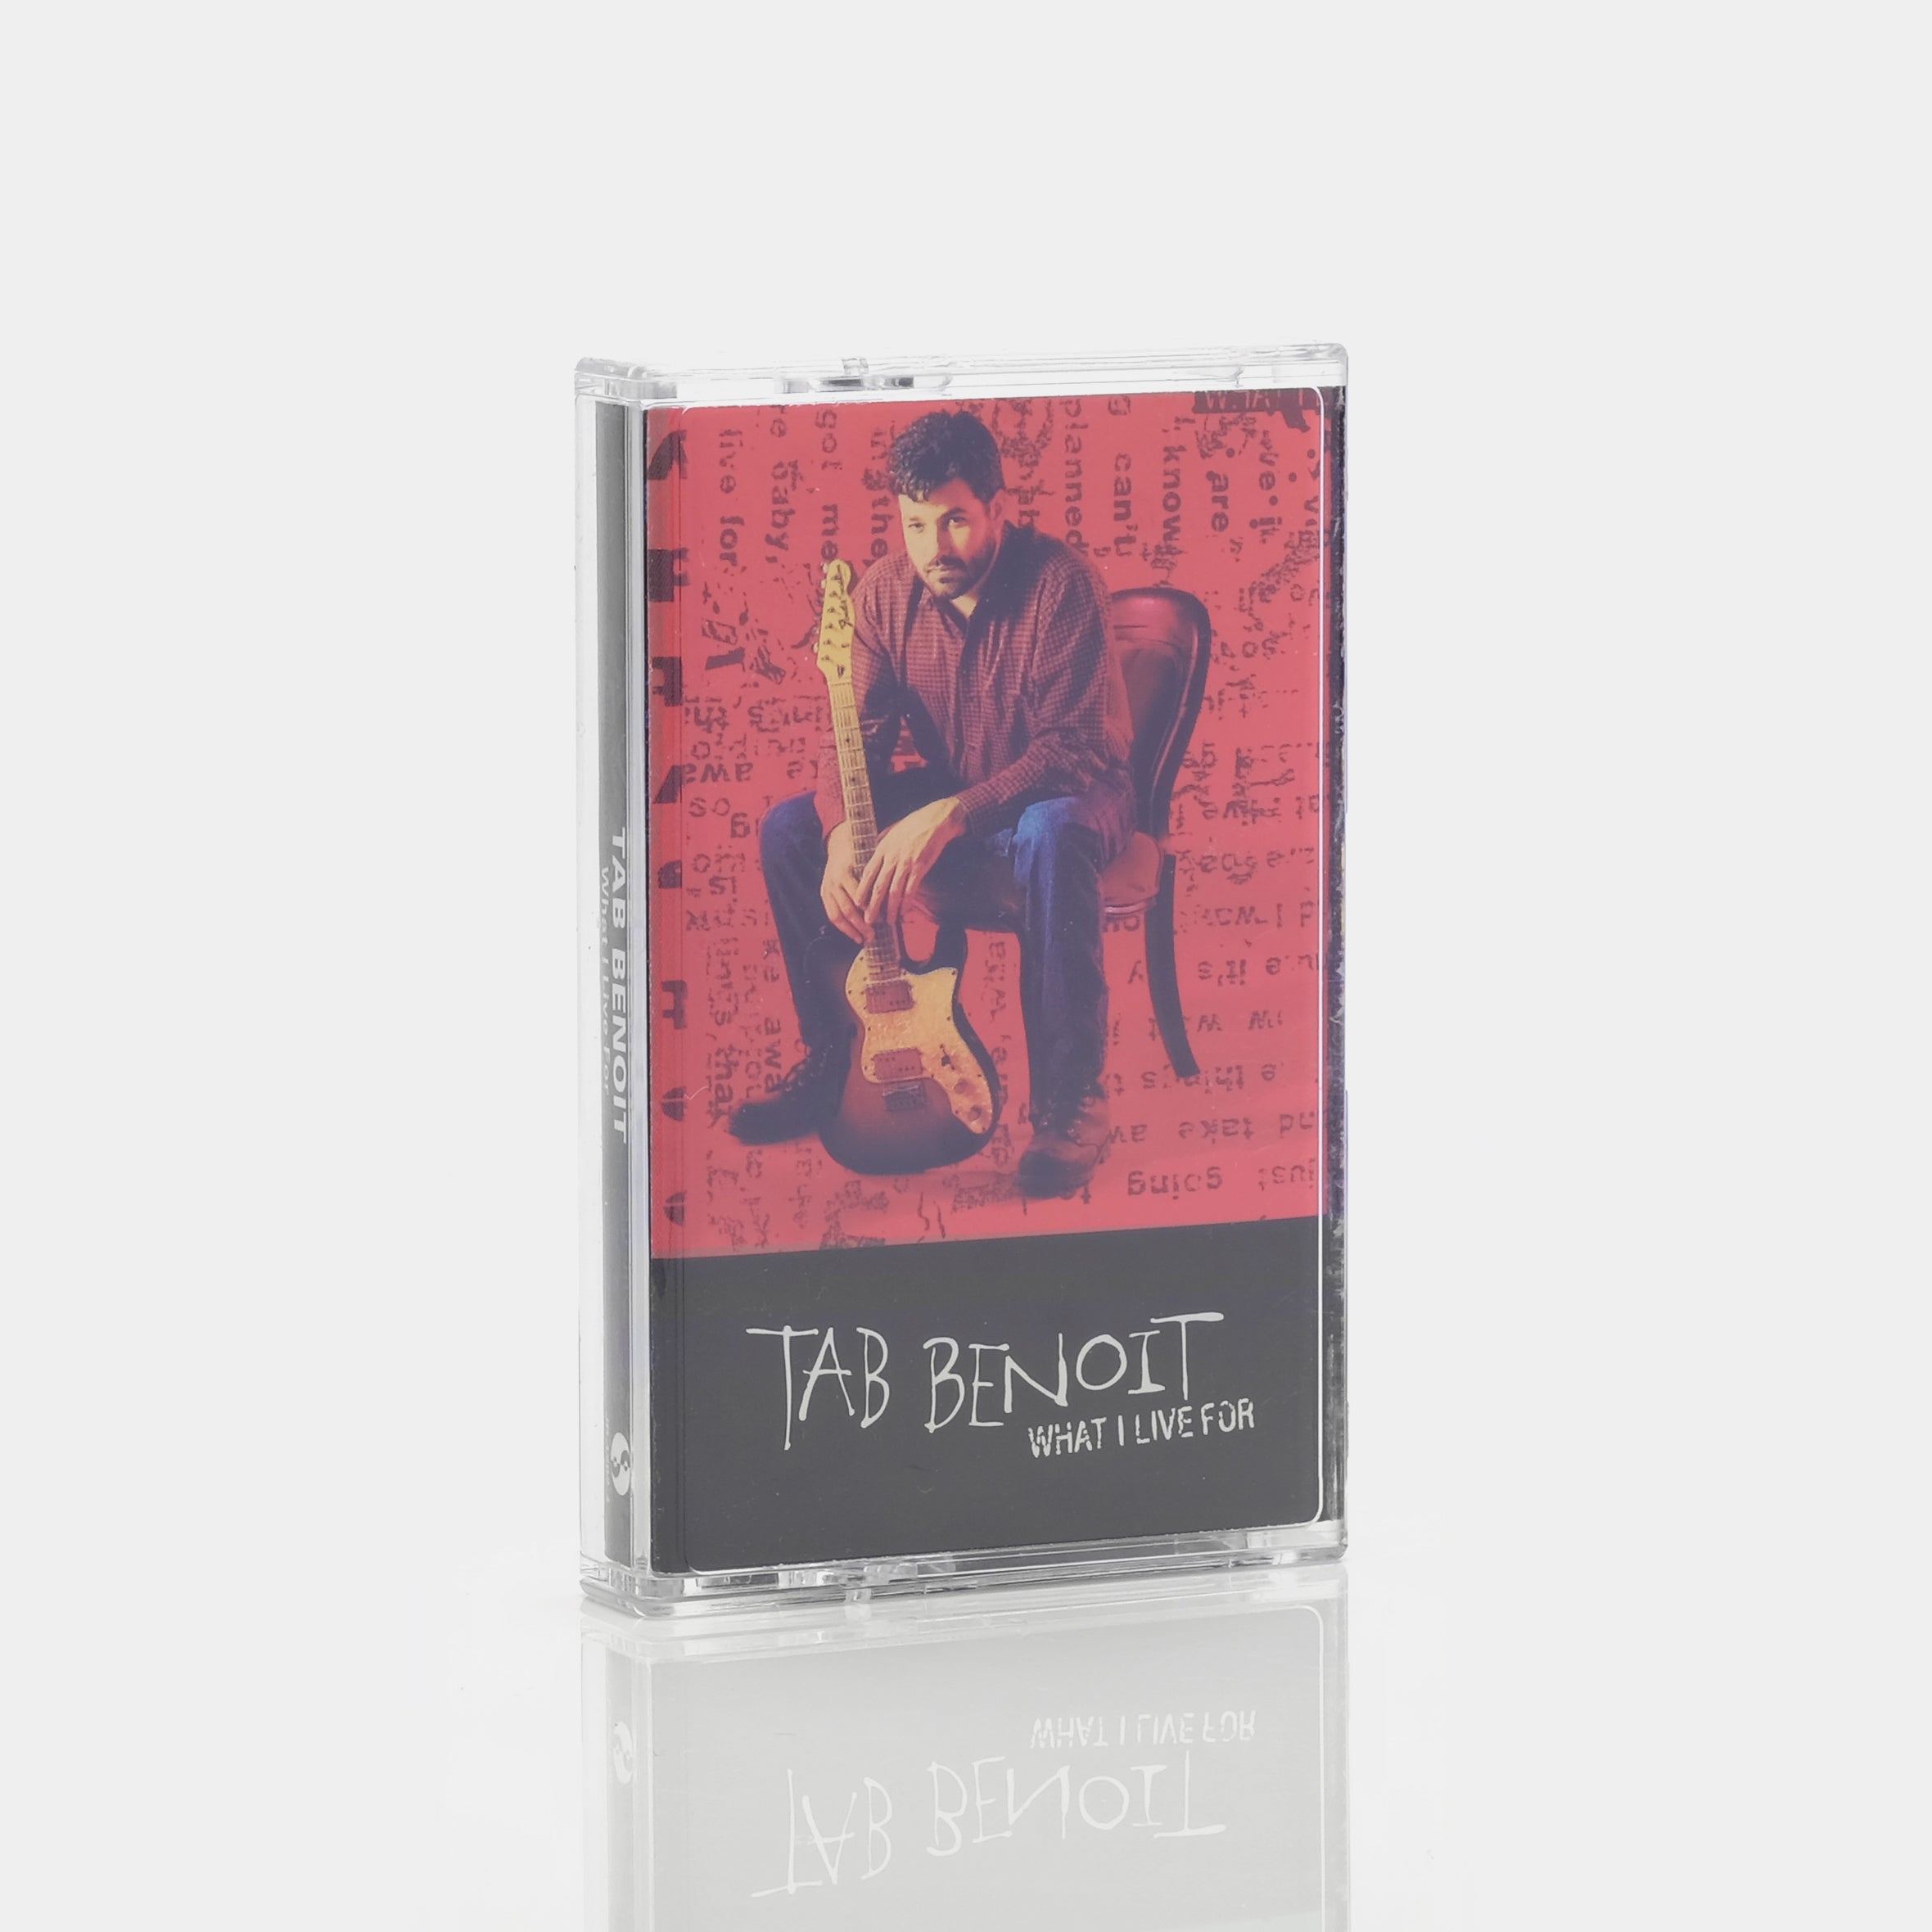 Tab Benoit - What I Live For Cassette Tape